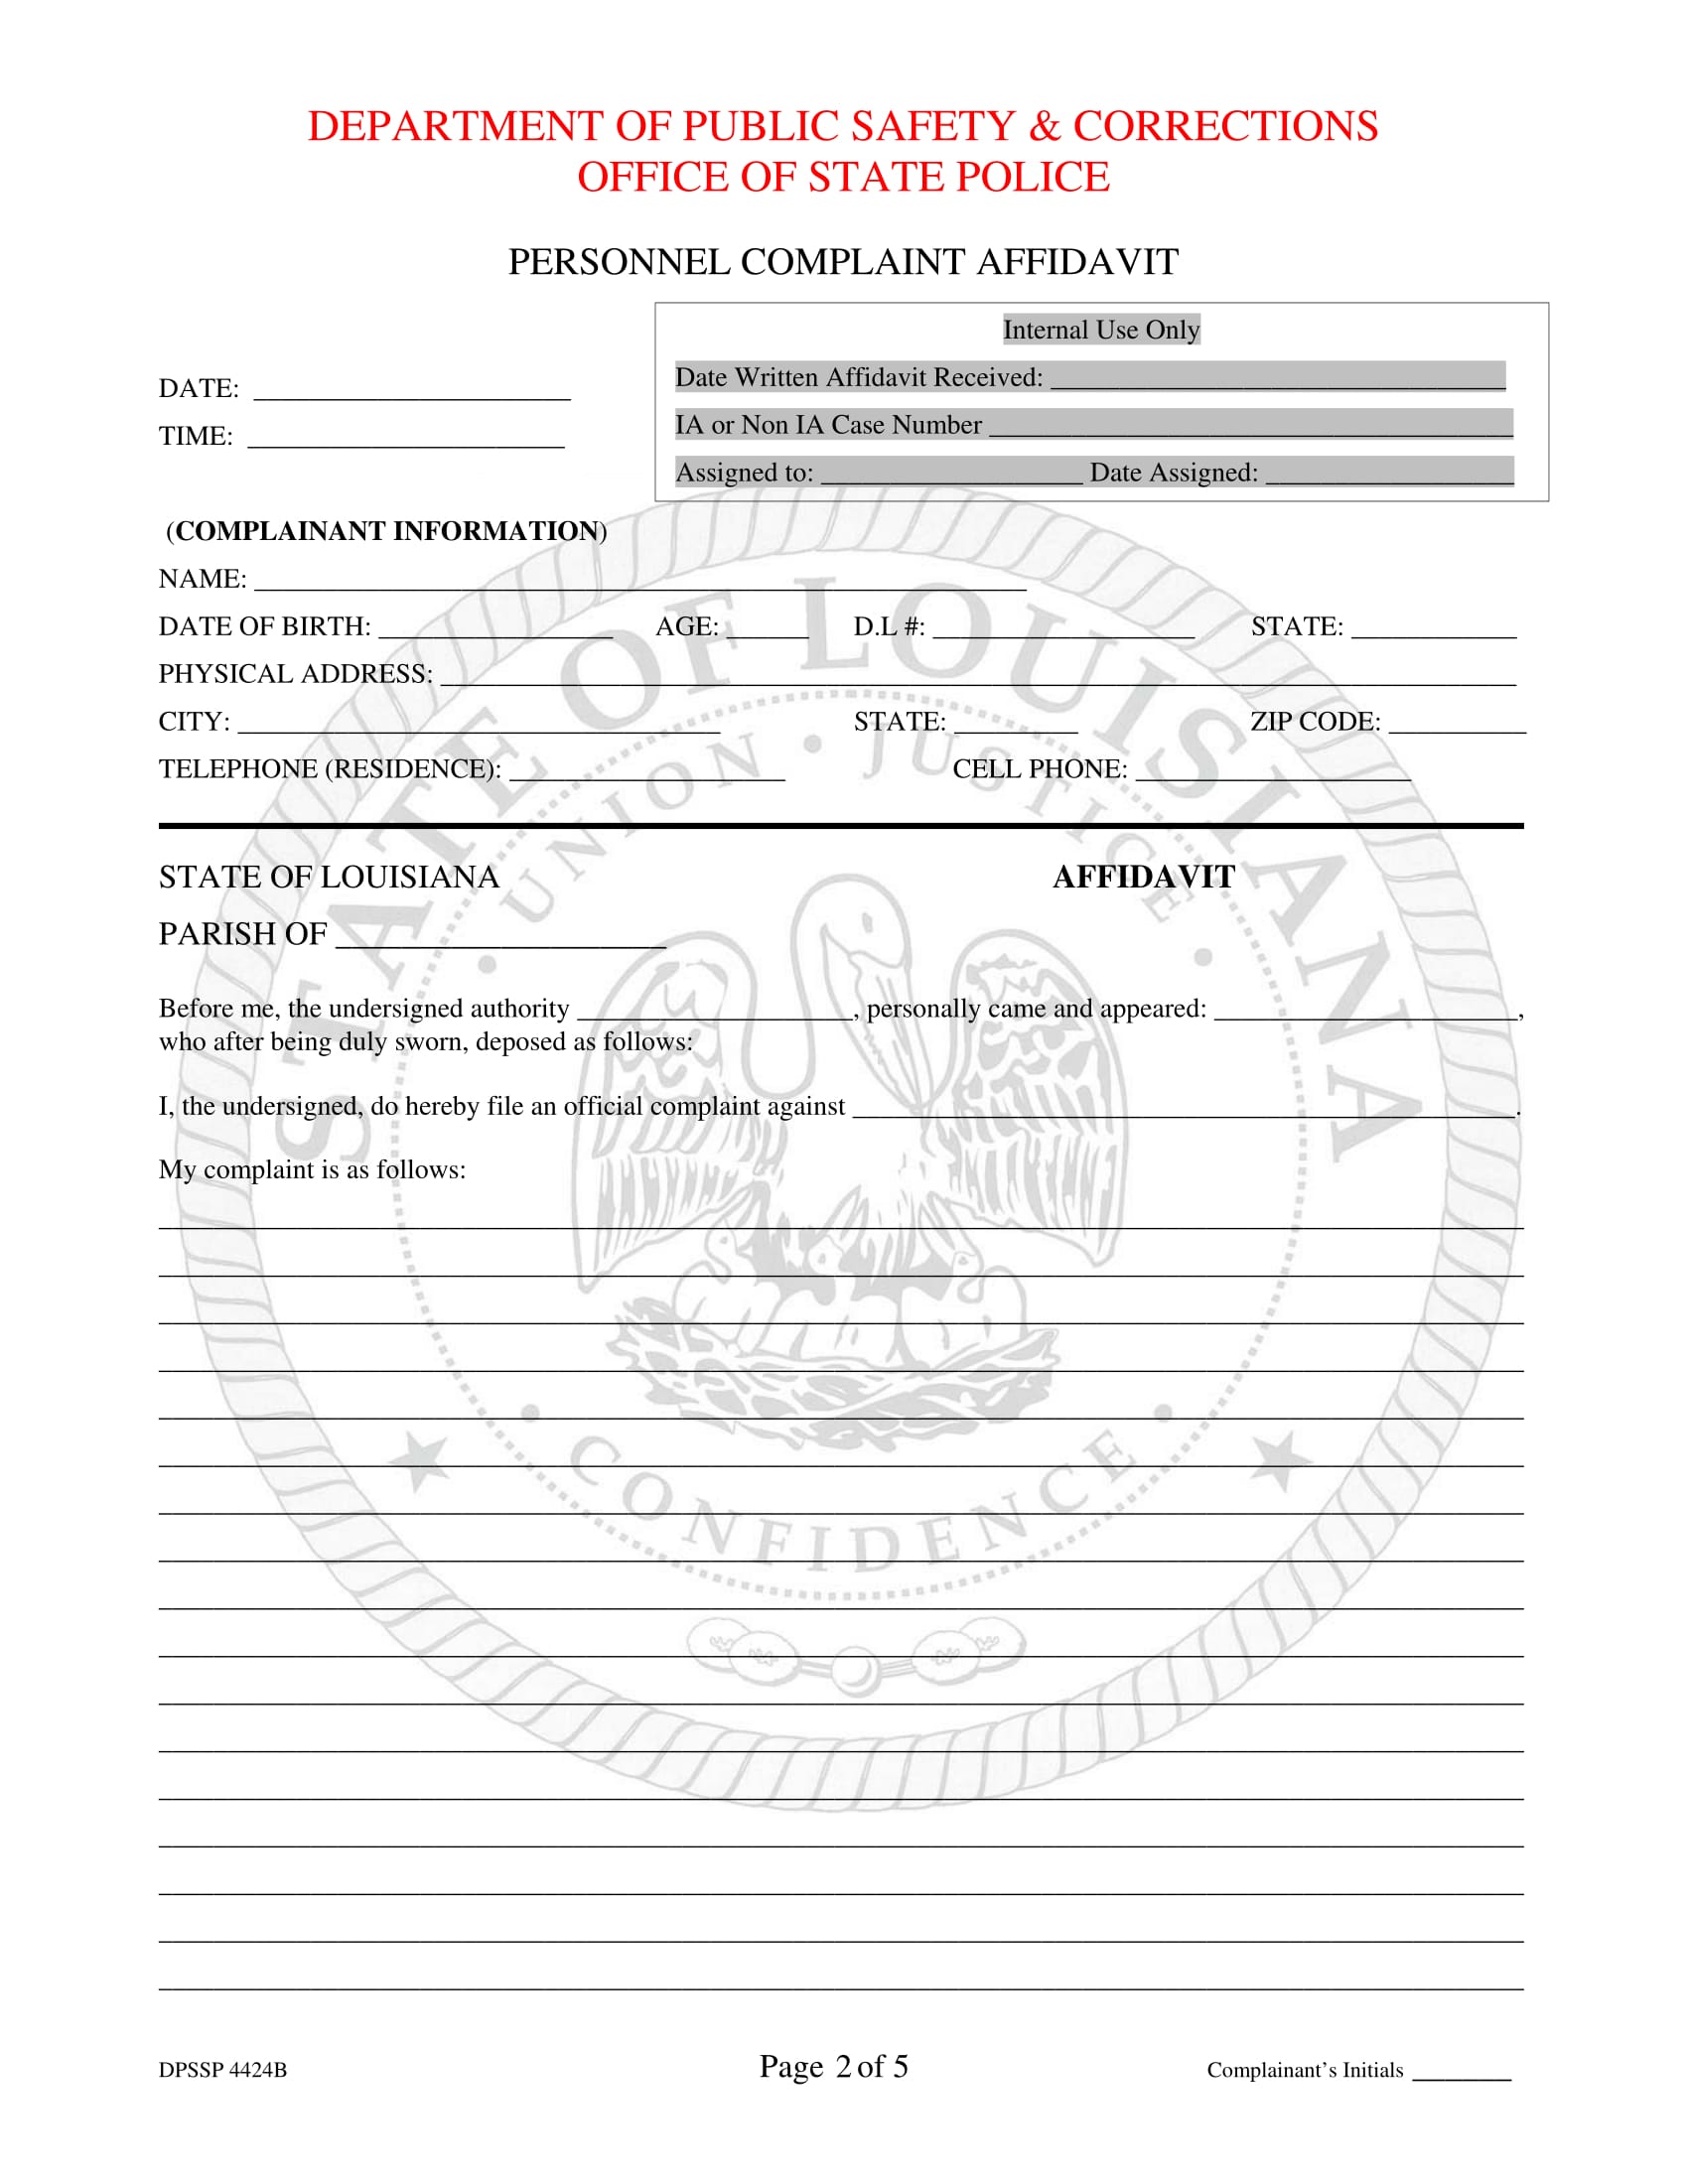 personnel complaint affidavit form 2